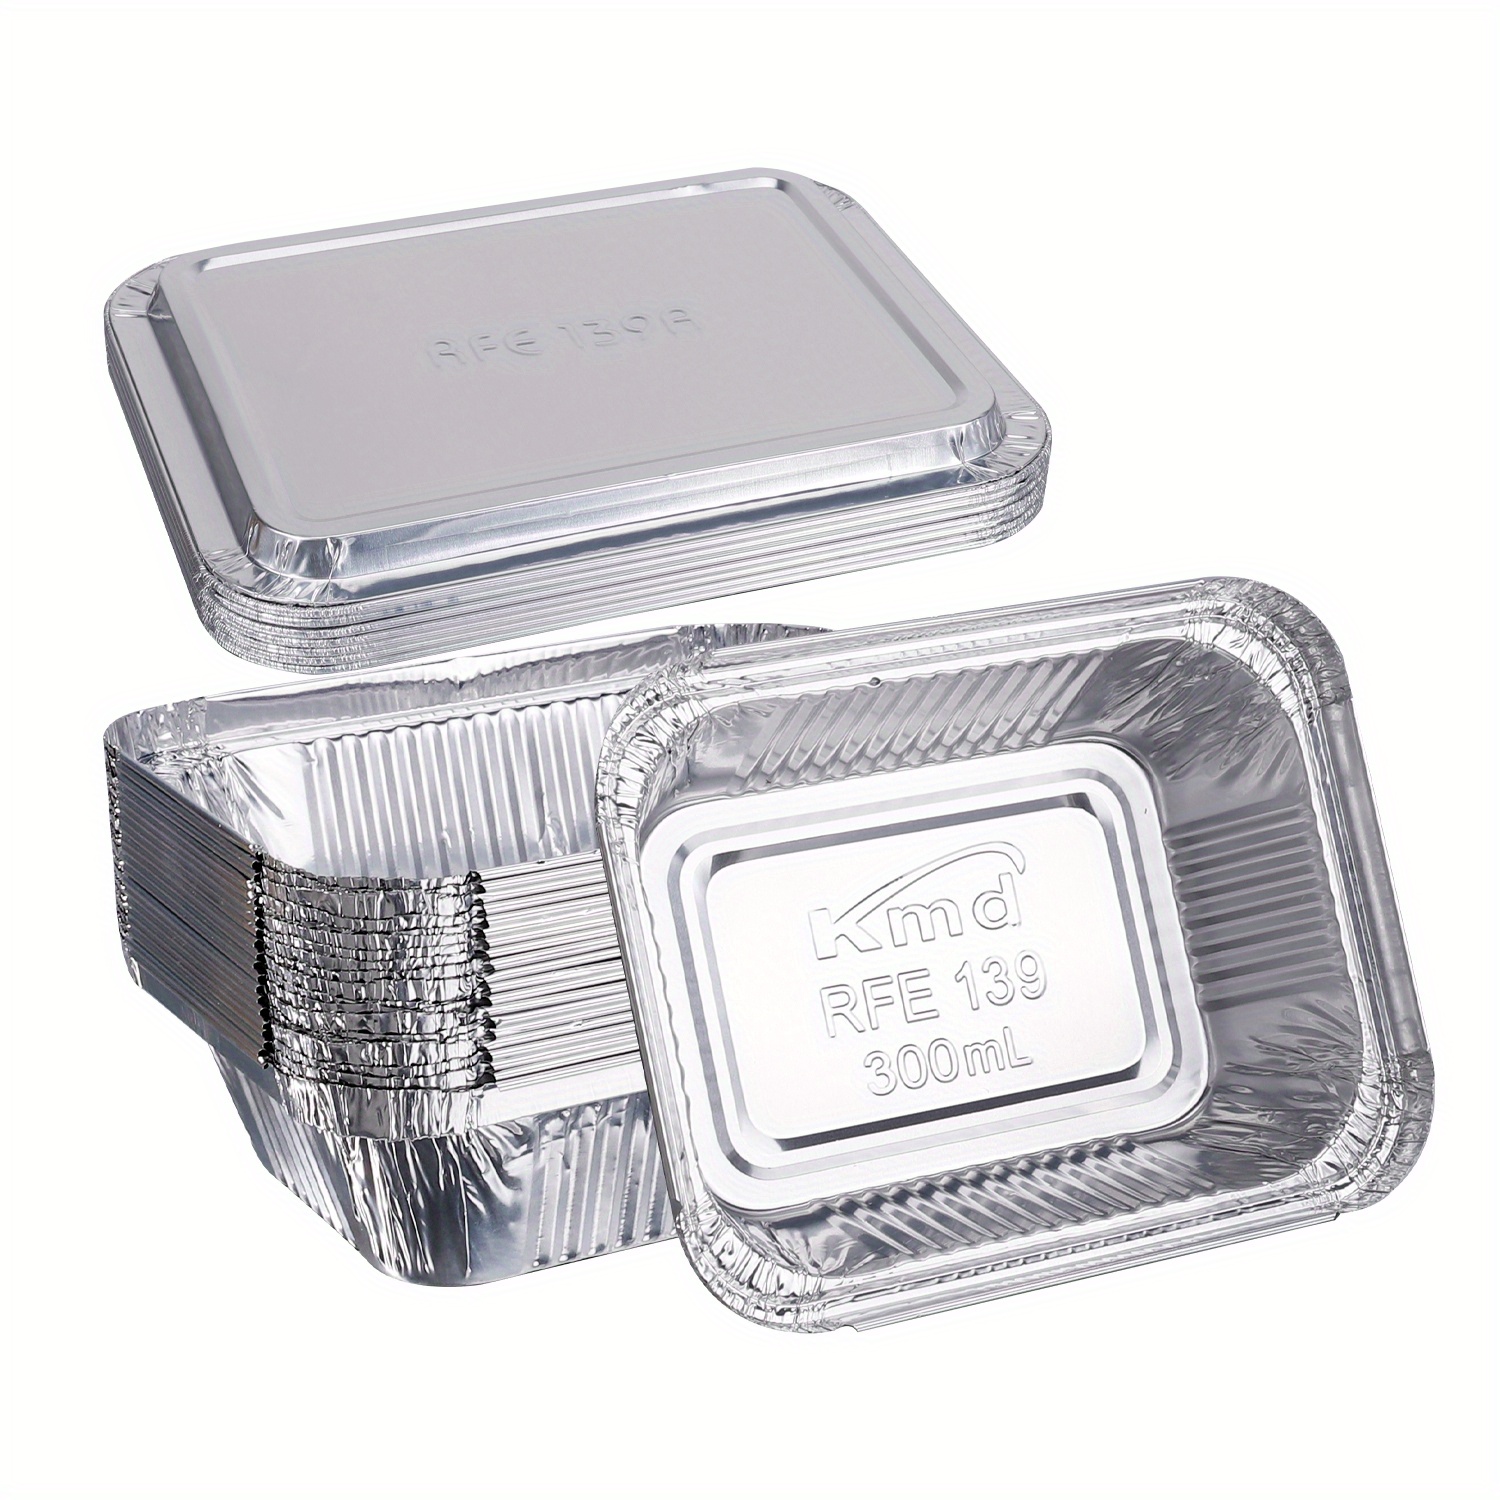 Recipiente de aluminio desechable para alimentos con tapas (paquete de 50)  contenedores reutilizables para llevar, ideal para hornear, asar, cocinar